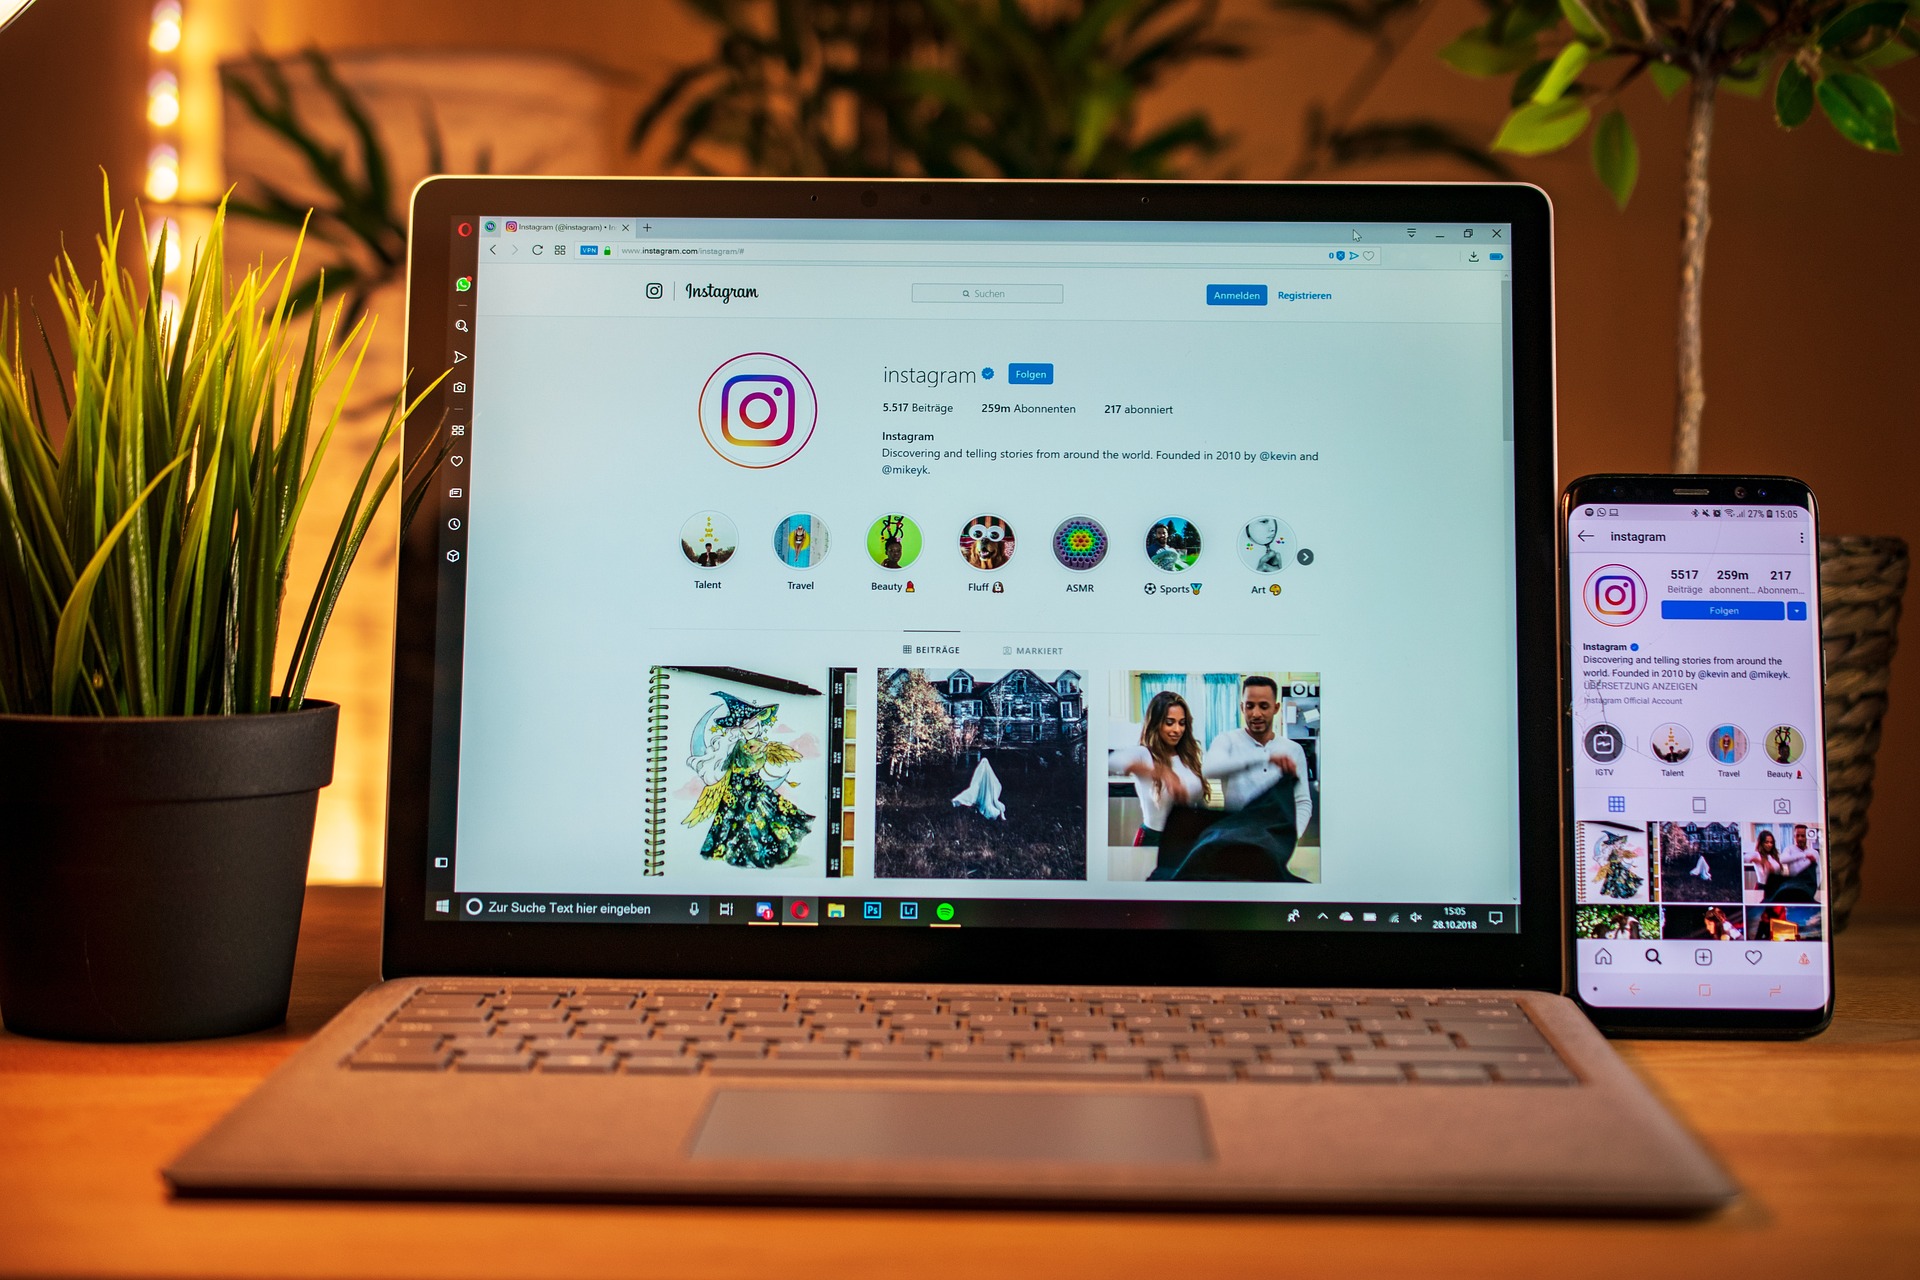 Imagem de uma mesa contendo um vaso de plantas Ã 
                esquerda, um notebook ao centro e um celular Ã  direita,
                ambos exibindo a tela do aplicativo instagram.